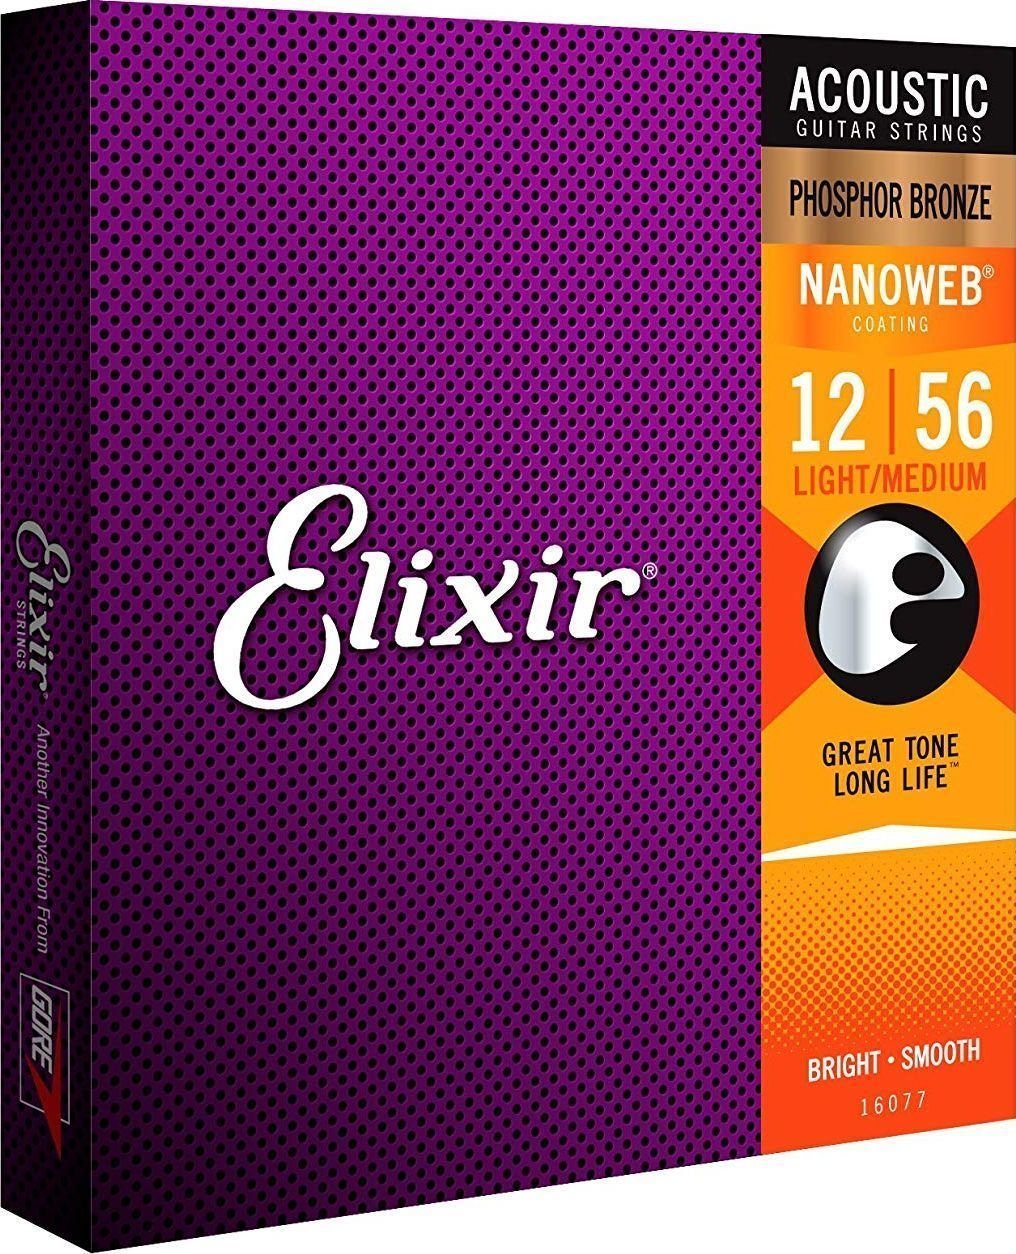 Elixir 16077 Nanoweb 12-56 Elixir